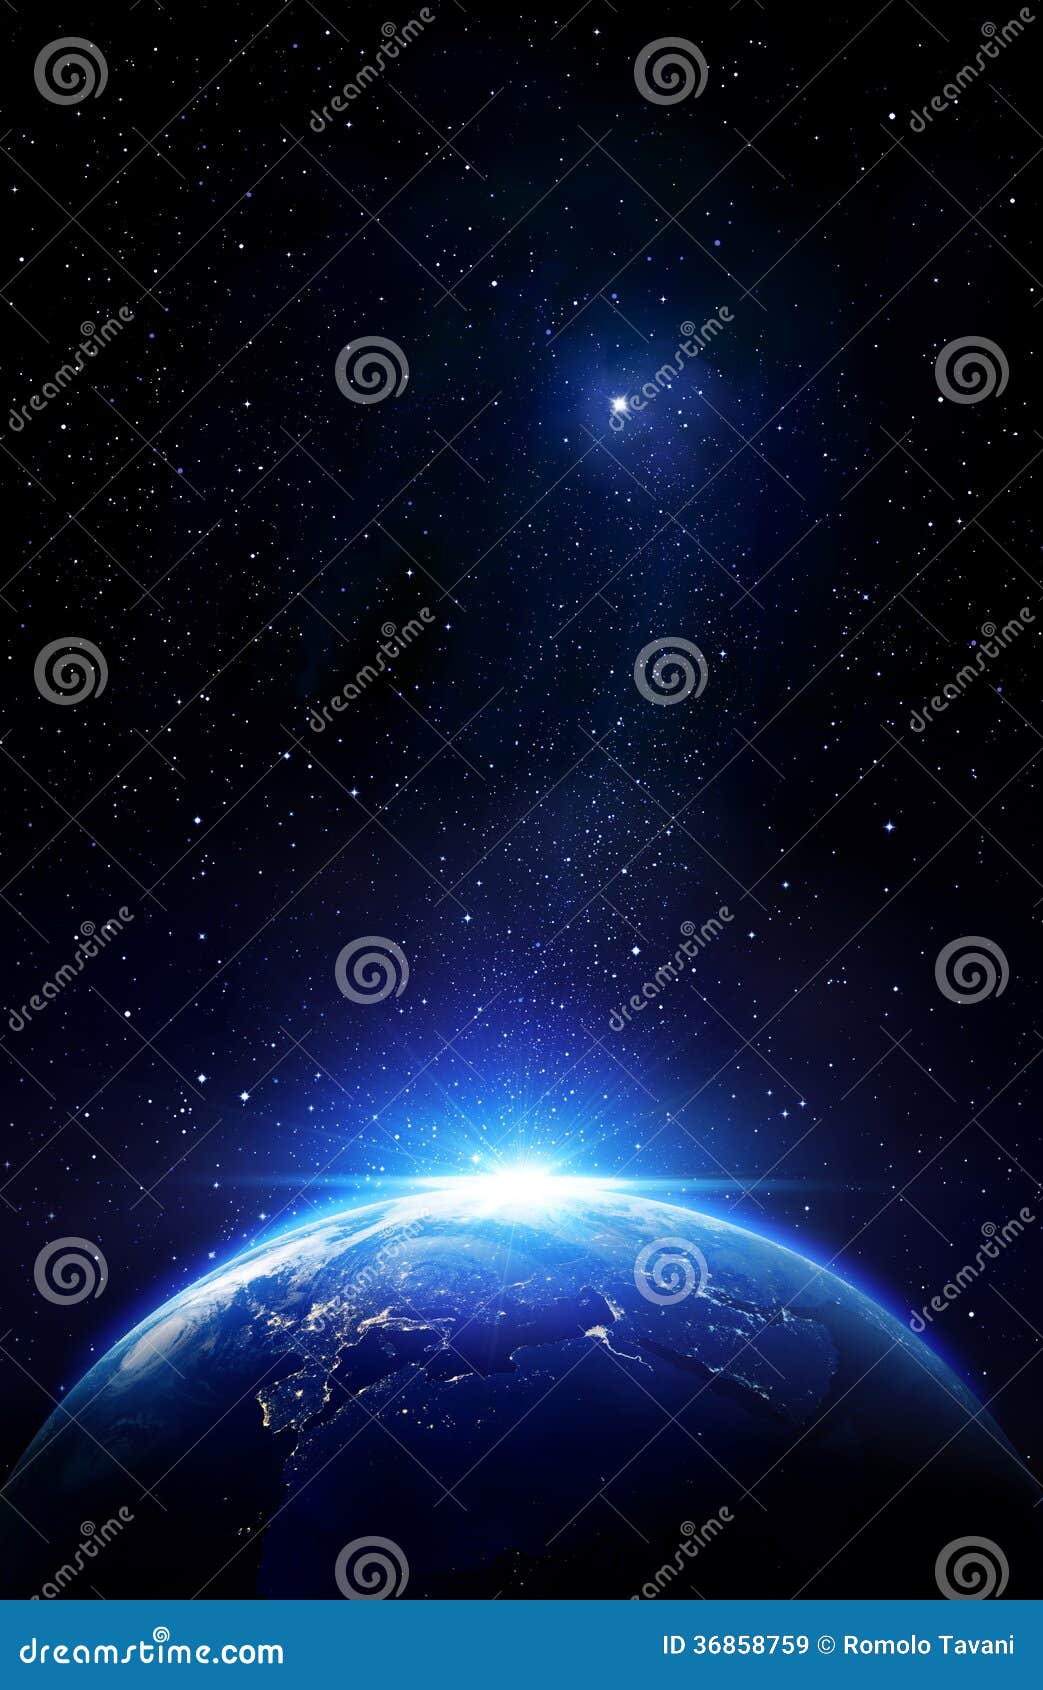 Más allá de los límites de la tierra, conectando con las estrellas